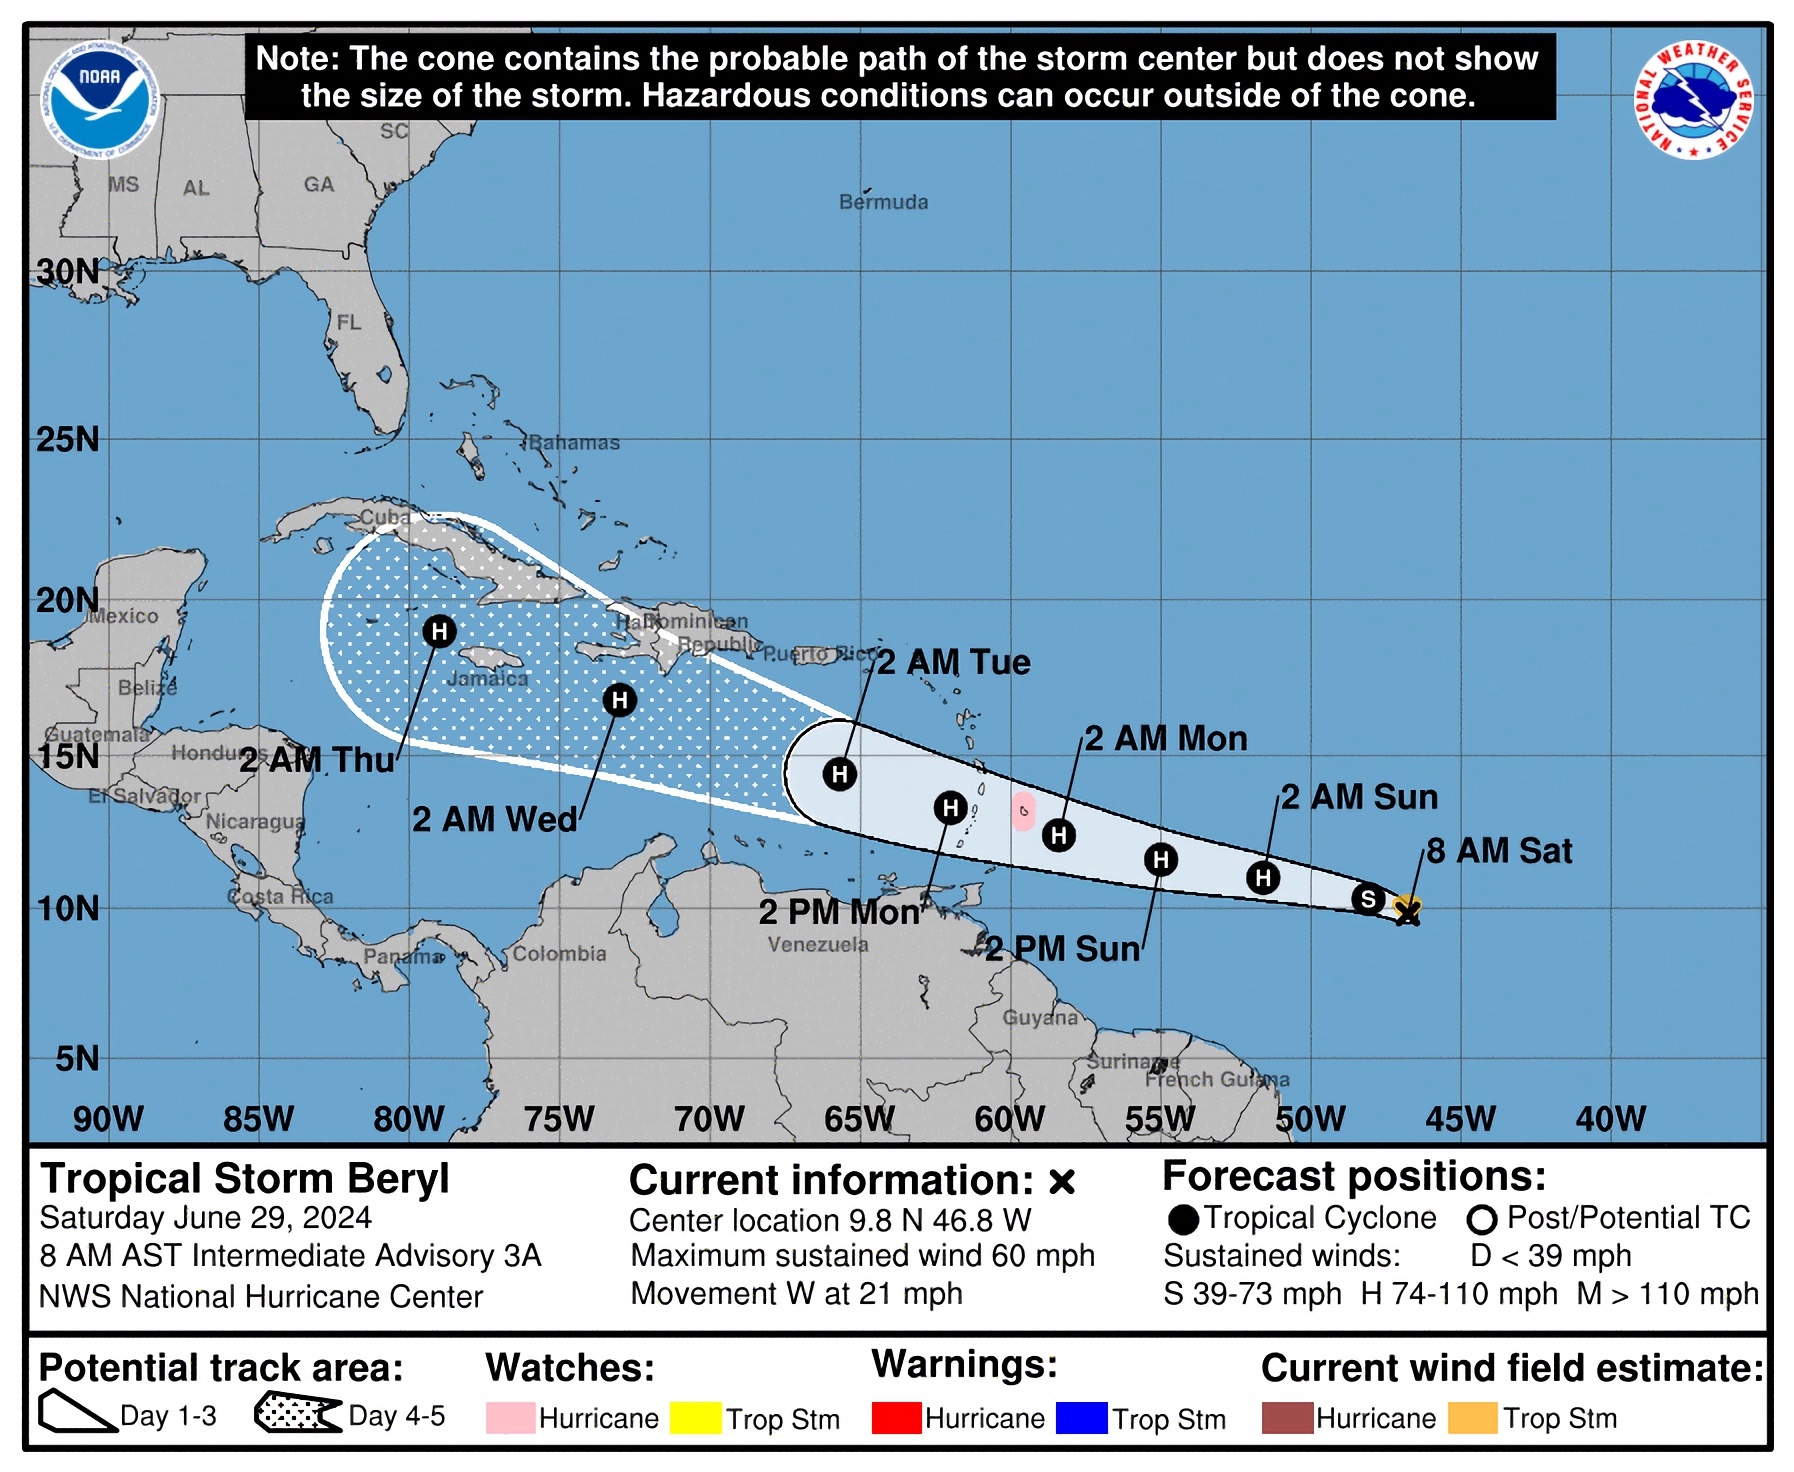 Tormenta-Beryl-se-convertirá-en-primer-huracán-del-atlántico